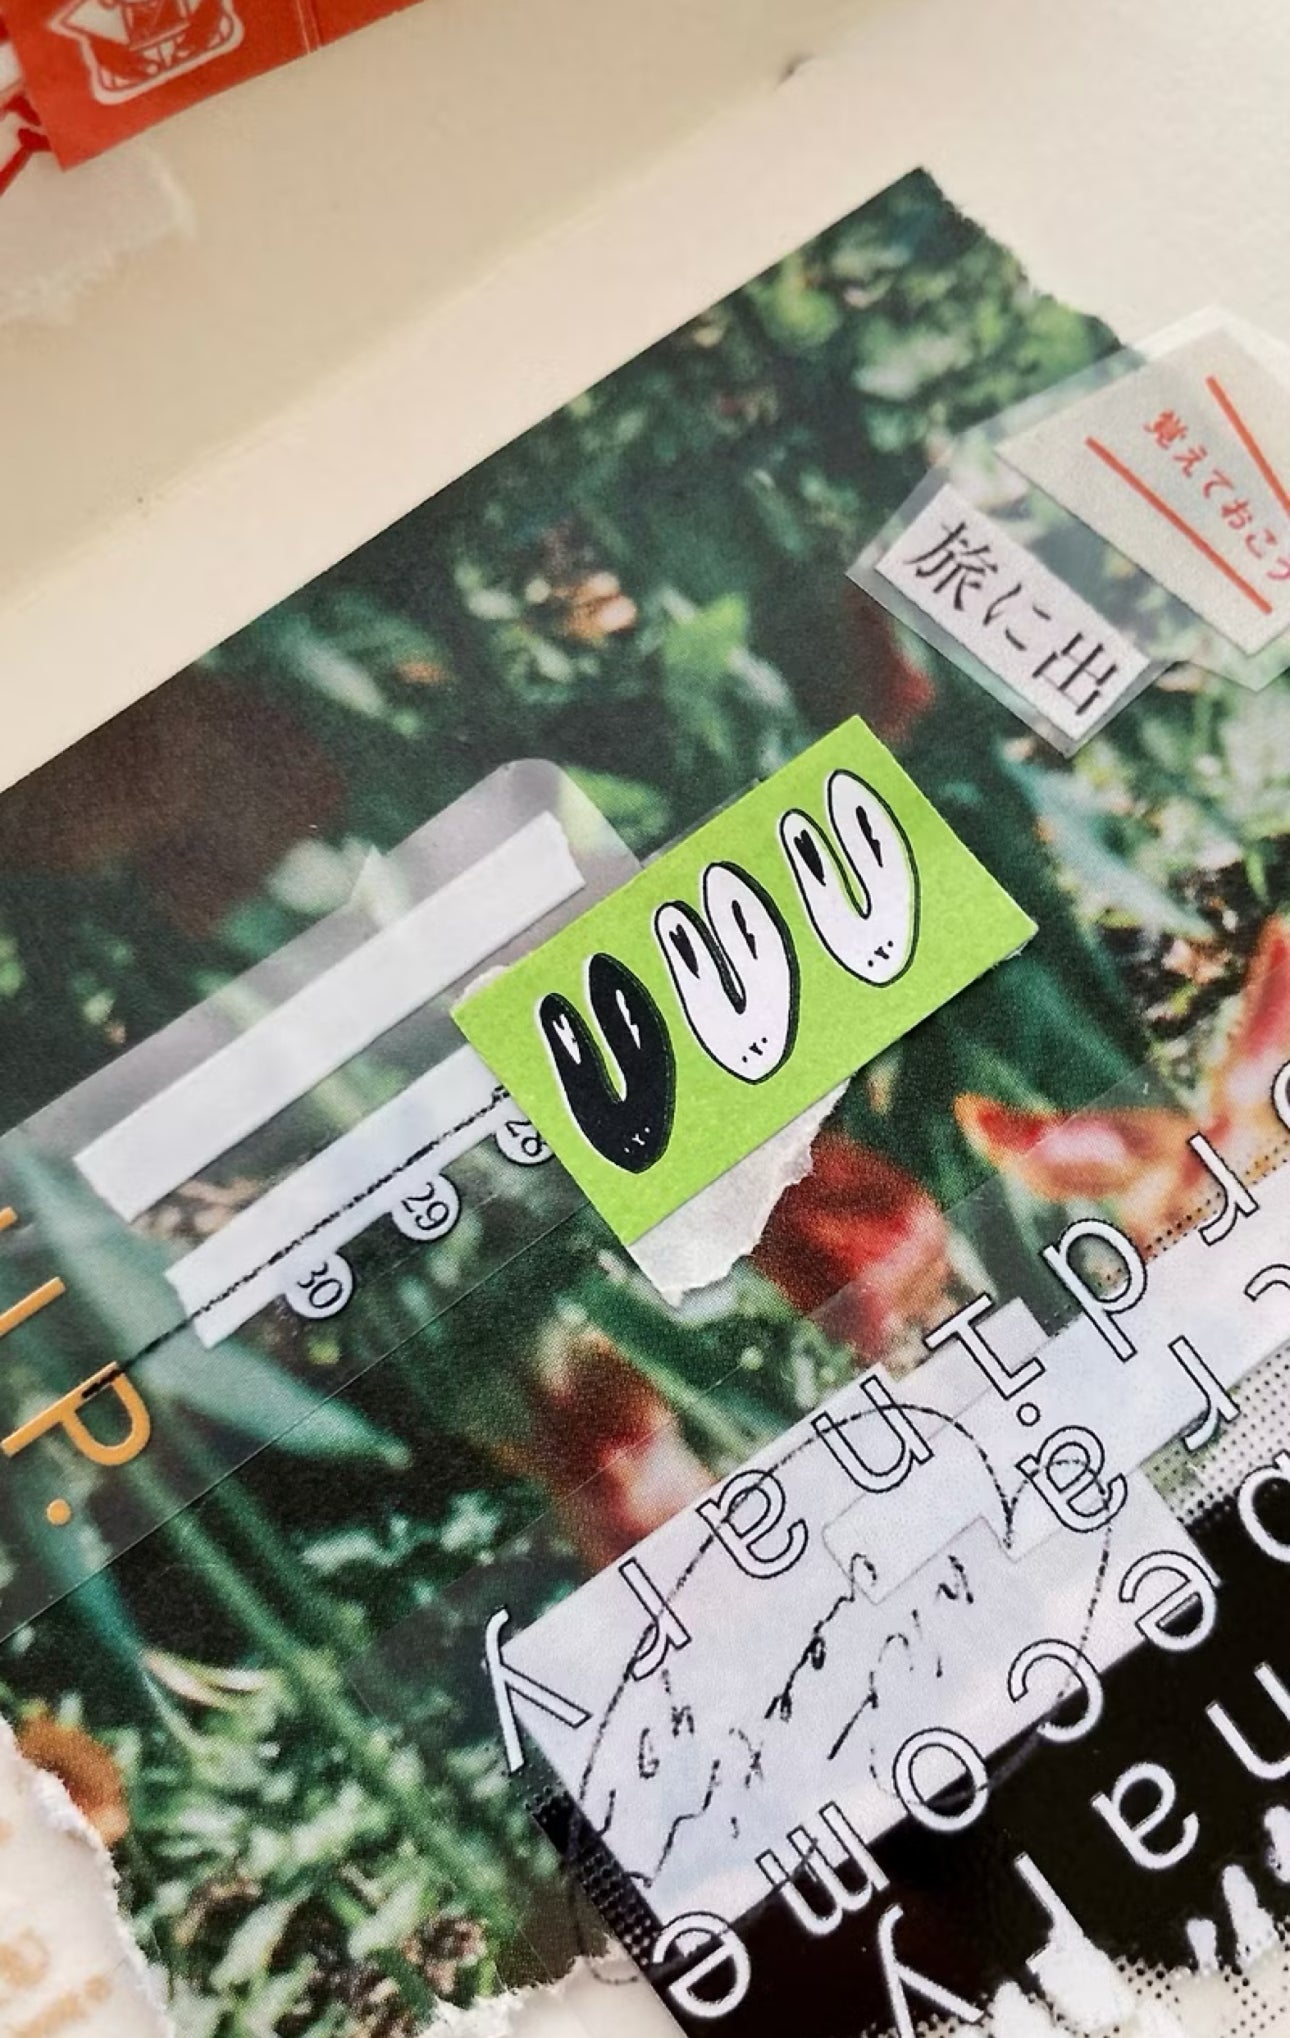 NEW! Somesortof.fern - Green | Sticker Tape | Release Paper